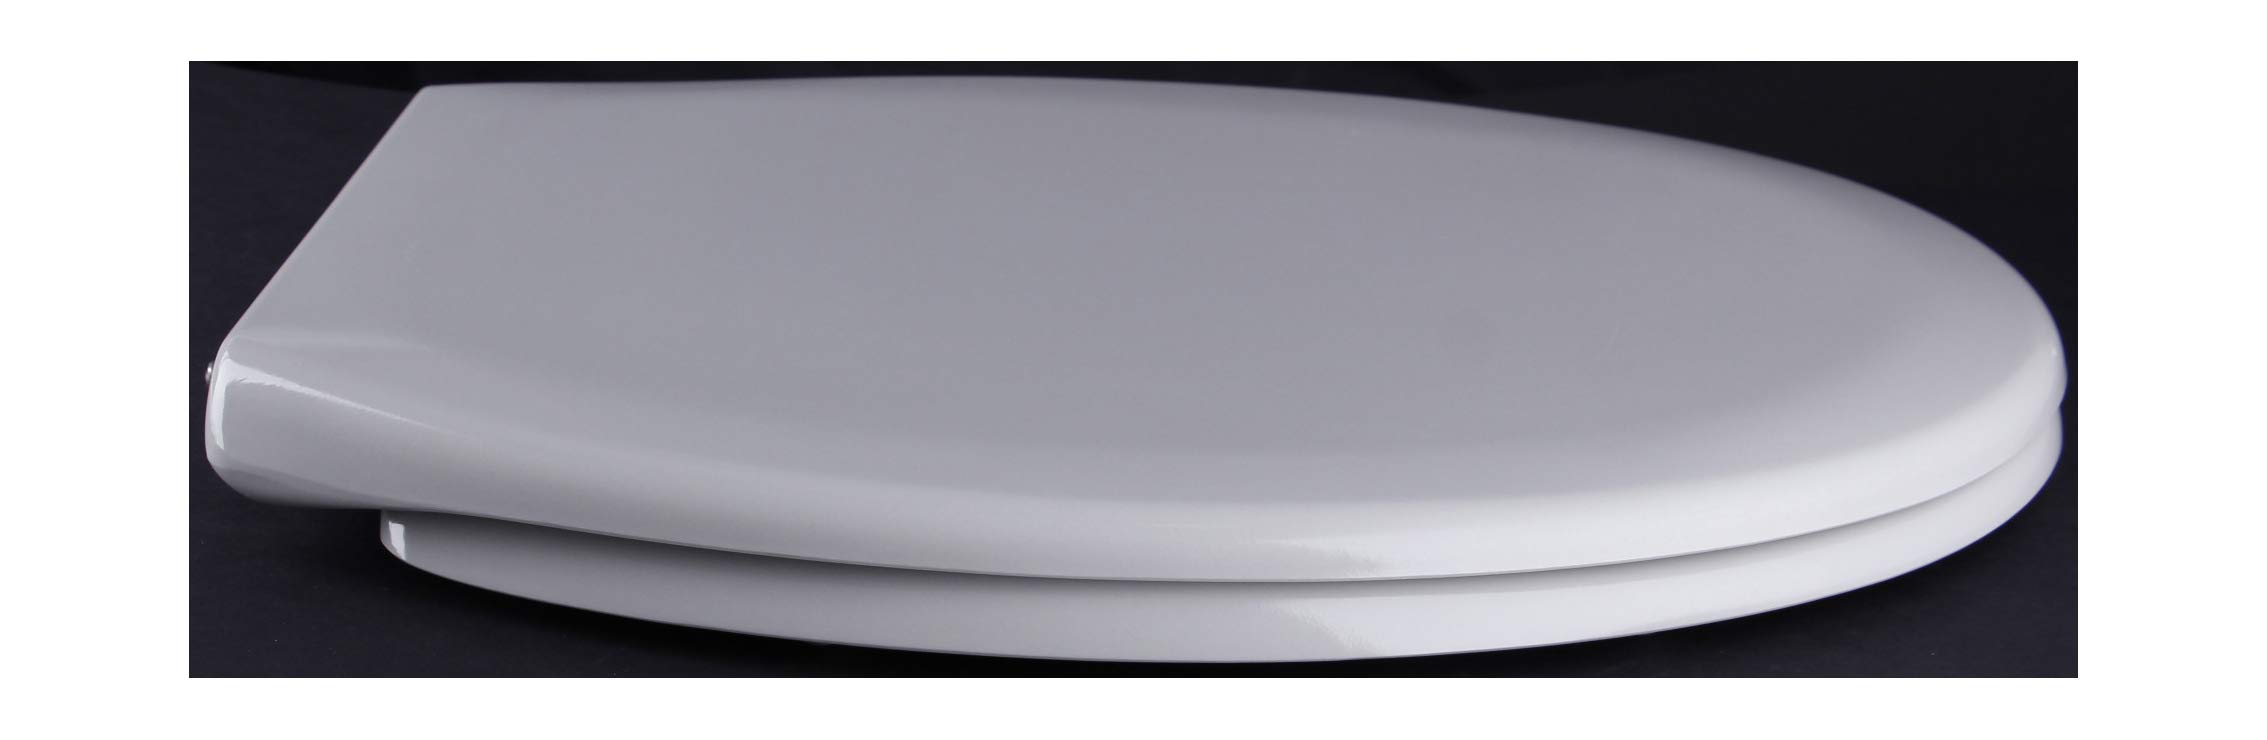 Grünblatt WC Sitz Comfort Design Toilettendeckel oval Klodeckel mit Quick-Release-Funktion und Geräuschlose Absenkautomatik, Hochwertige Antibakterielle Duroplast (Manhattan Grau)